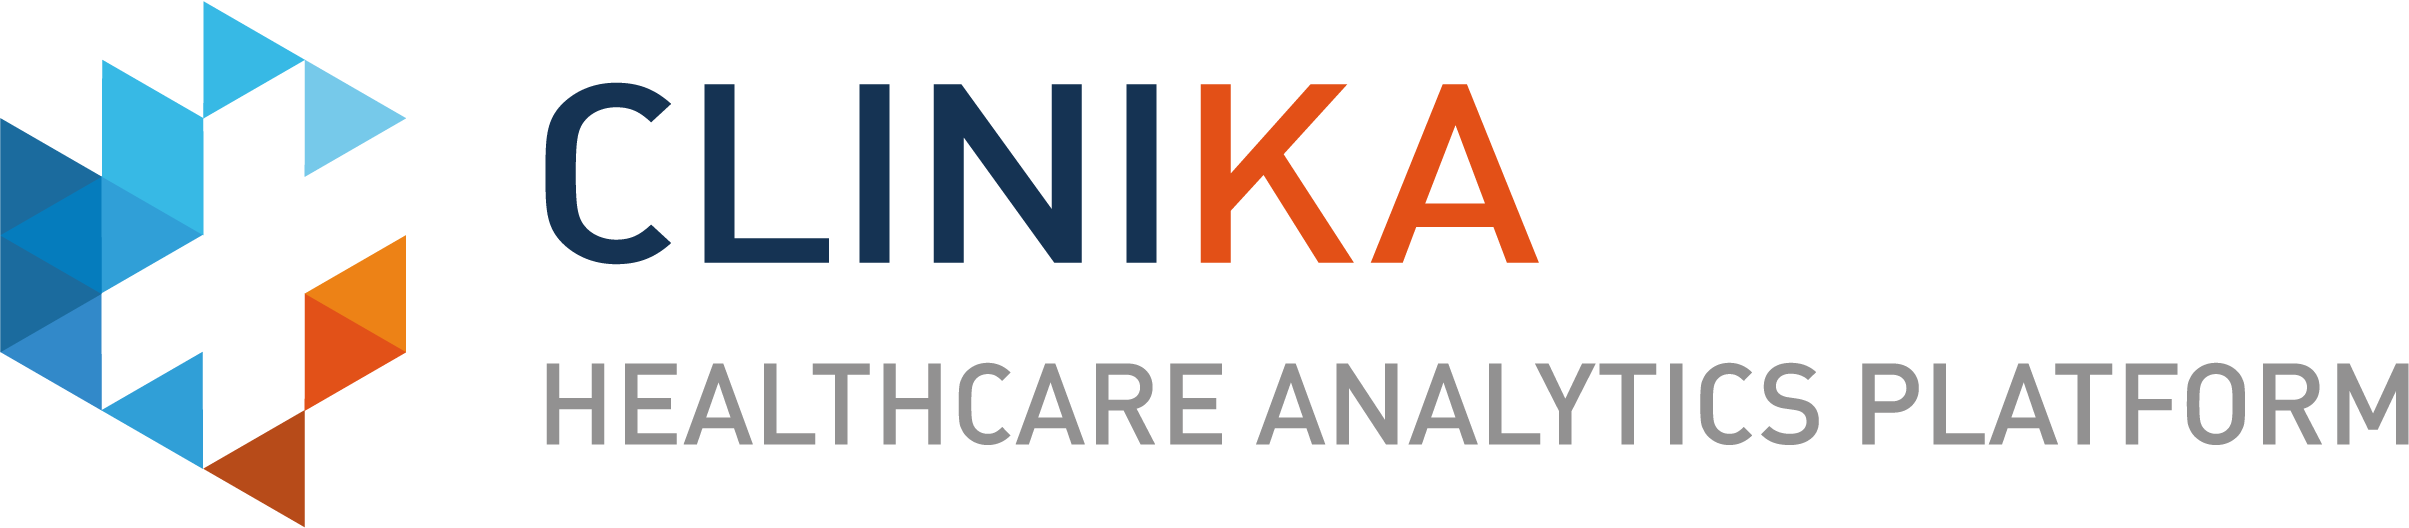 logo_CLINIKA_web